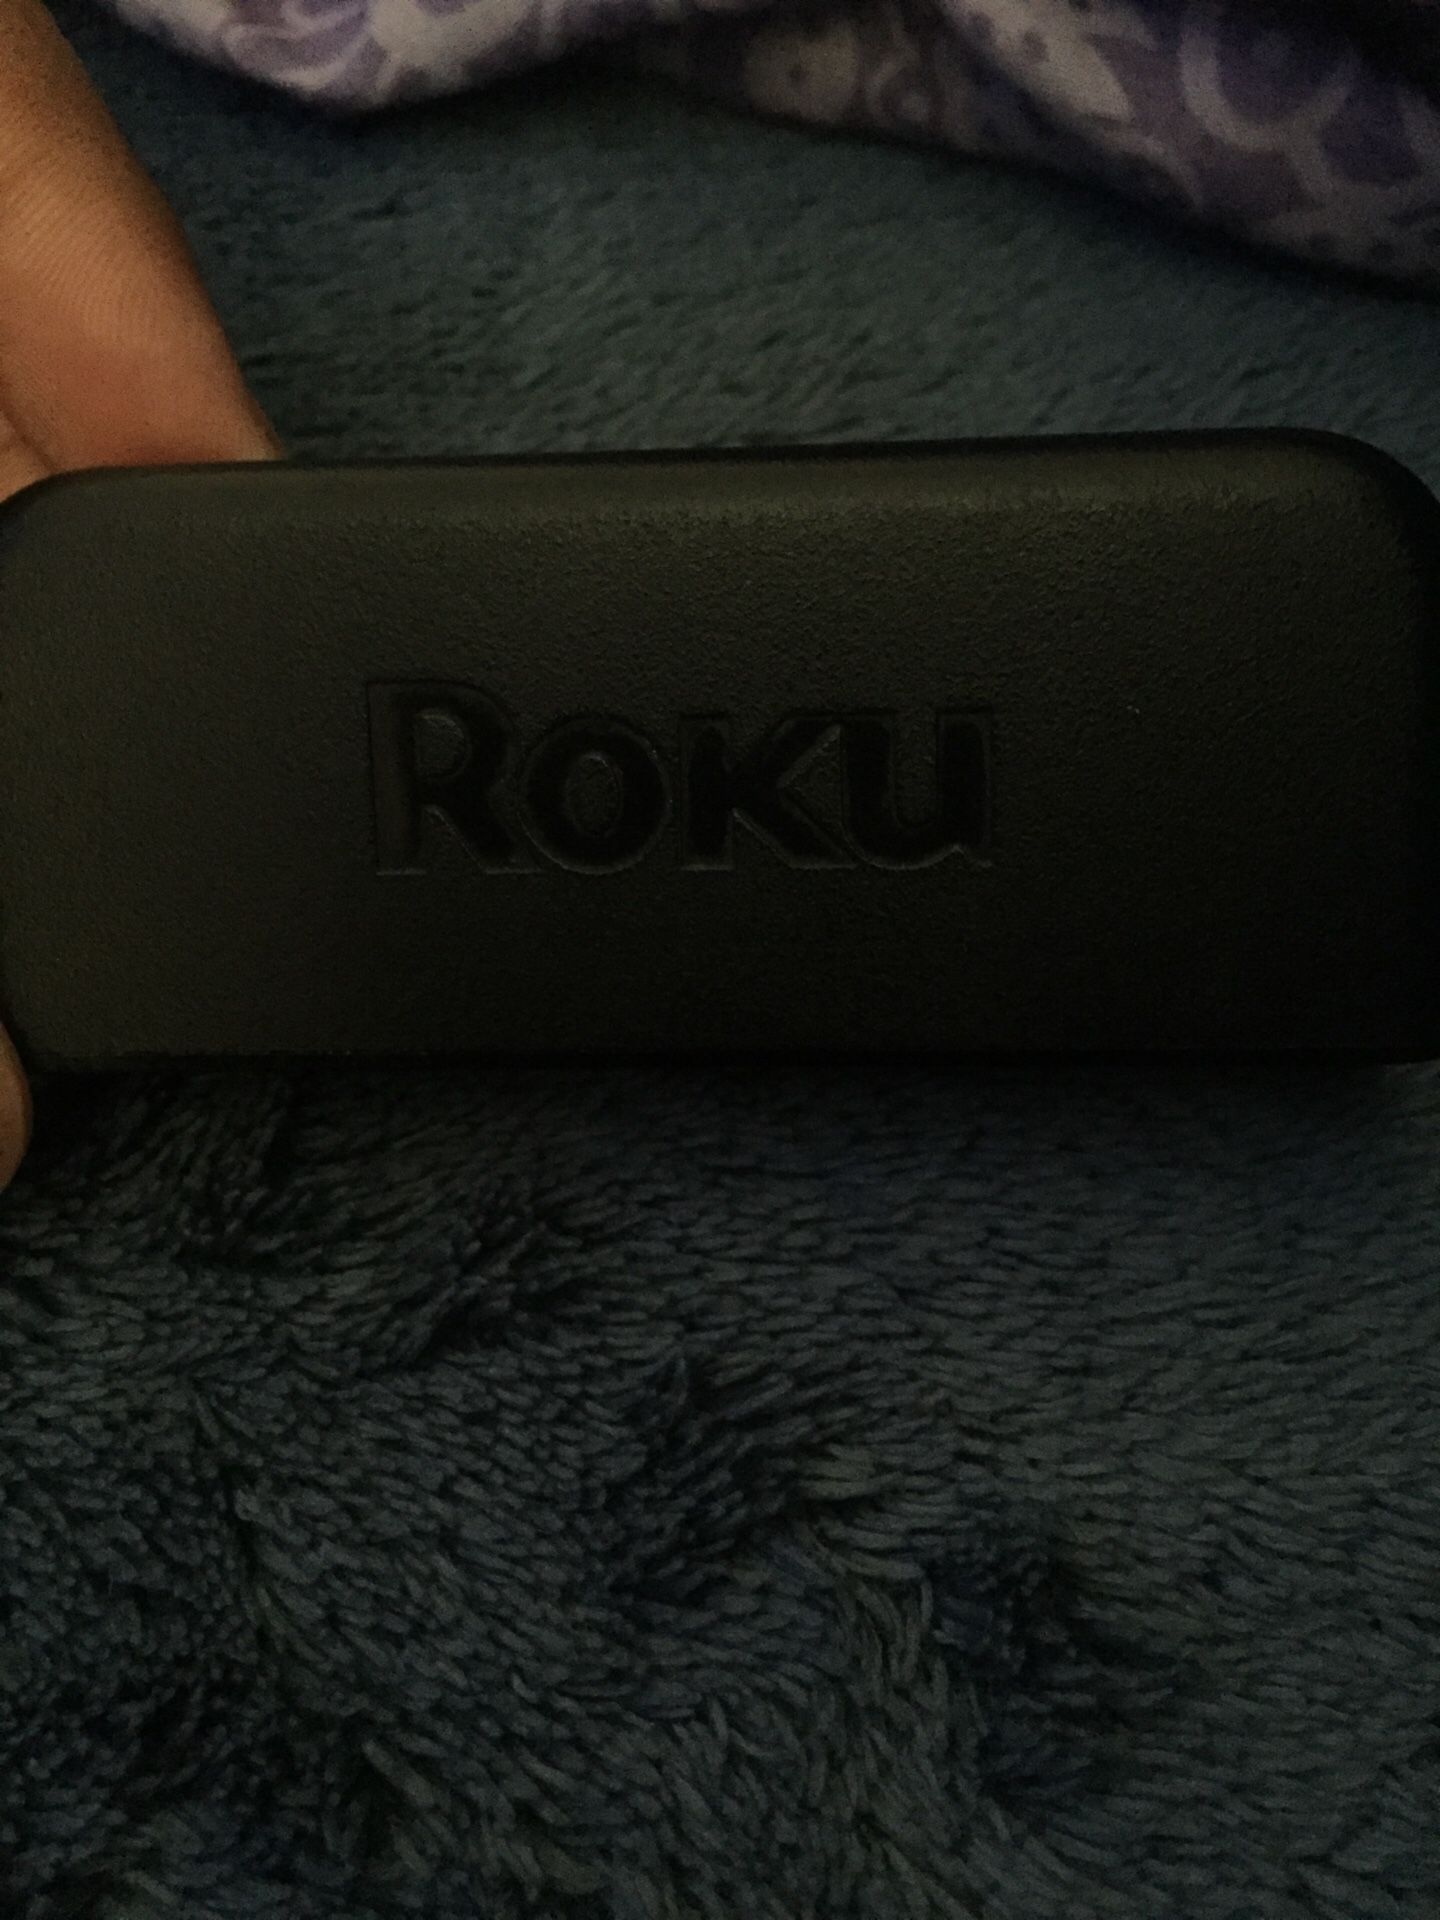 Roku Streaming device + remote